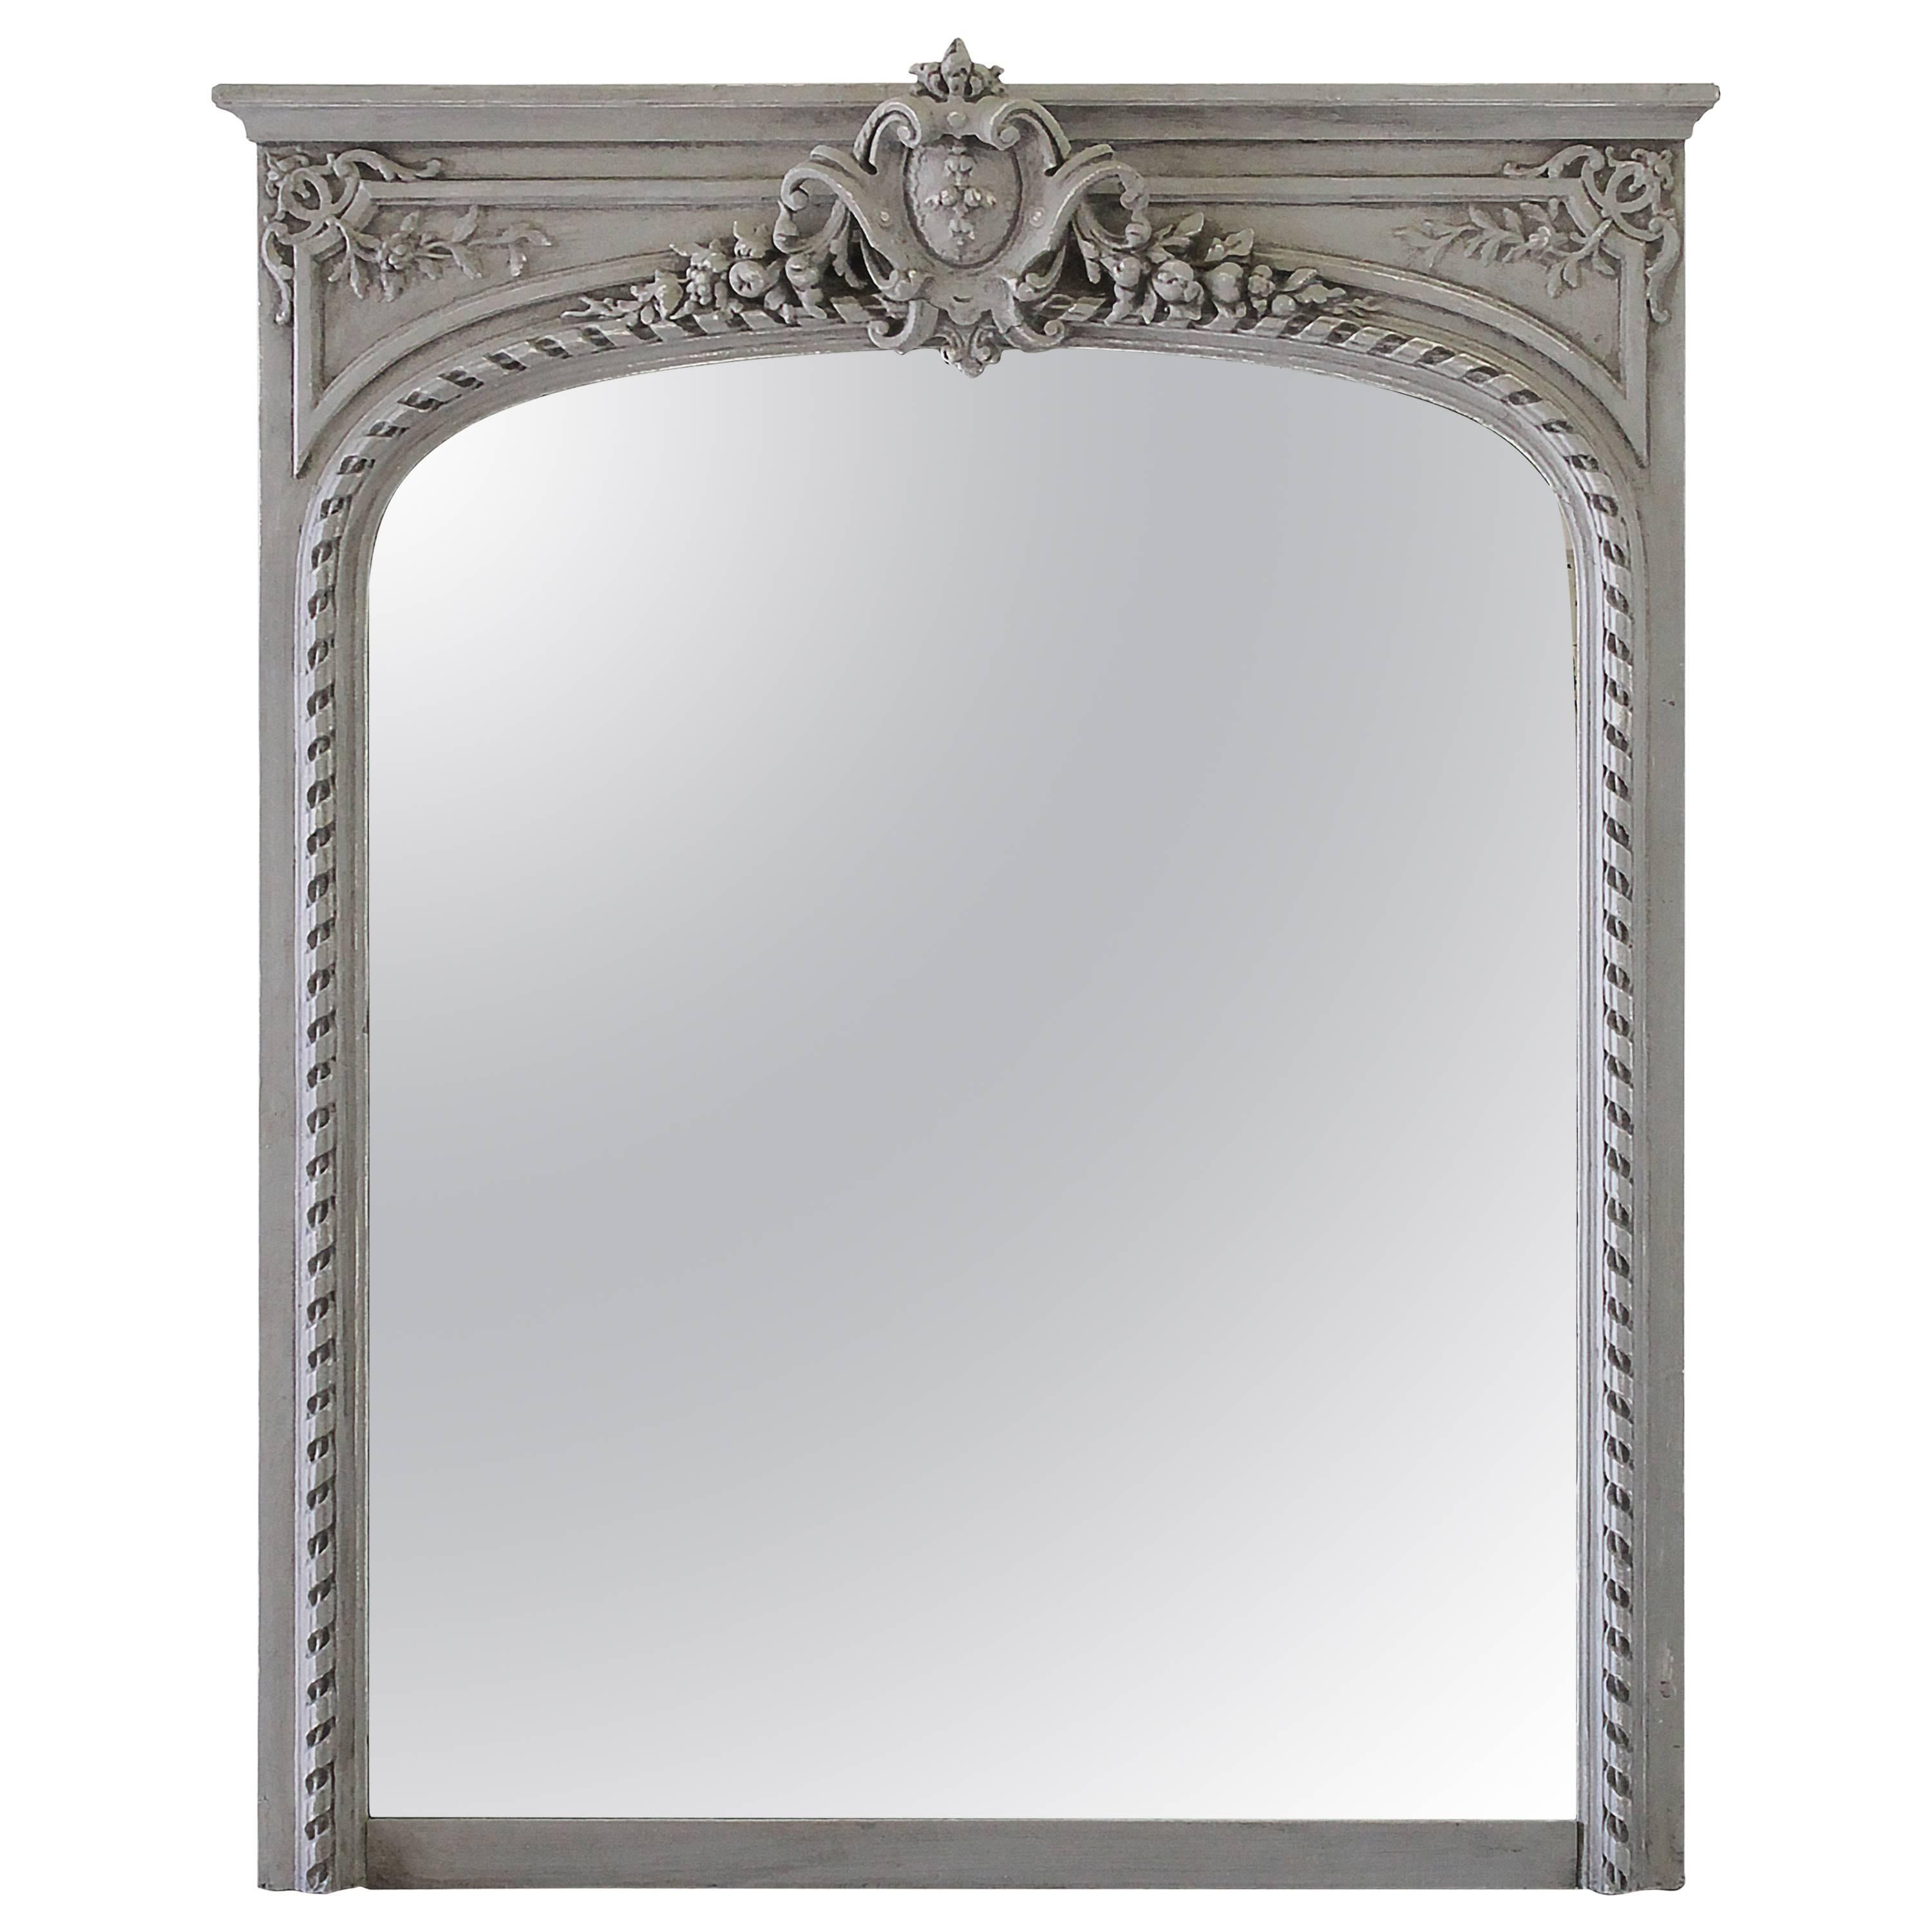 20th Century, Louis XVI Style Trumeau Mirror